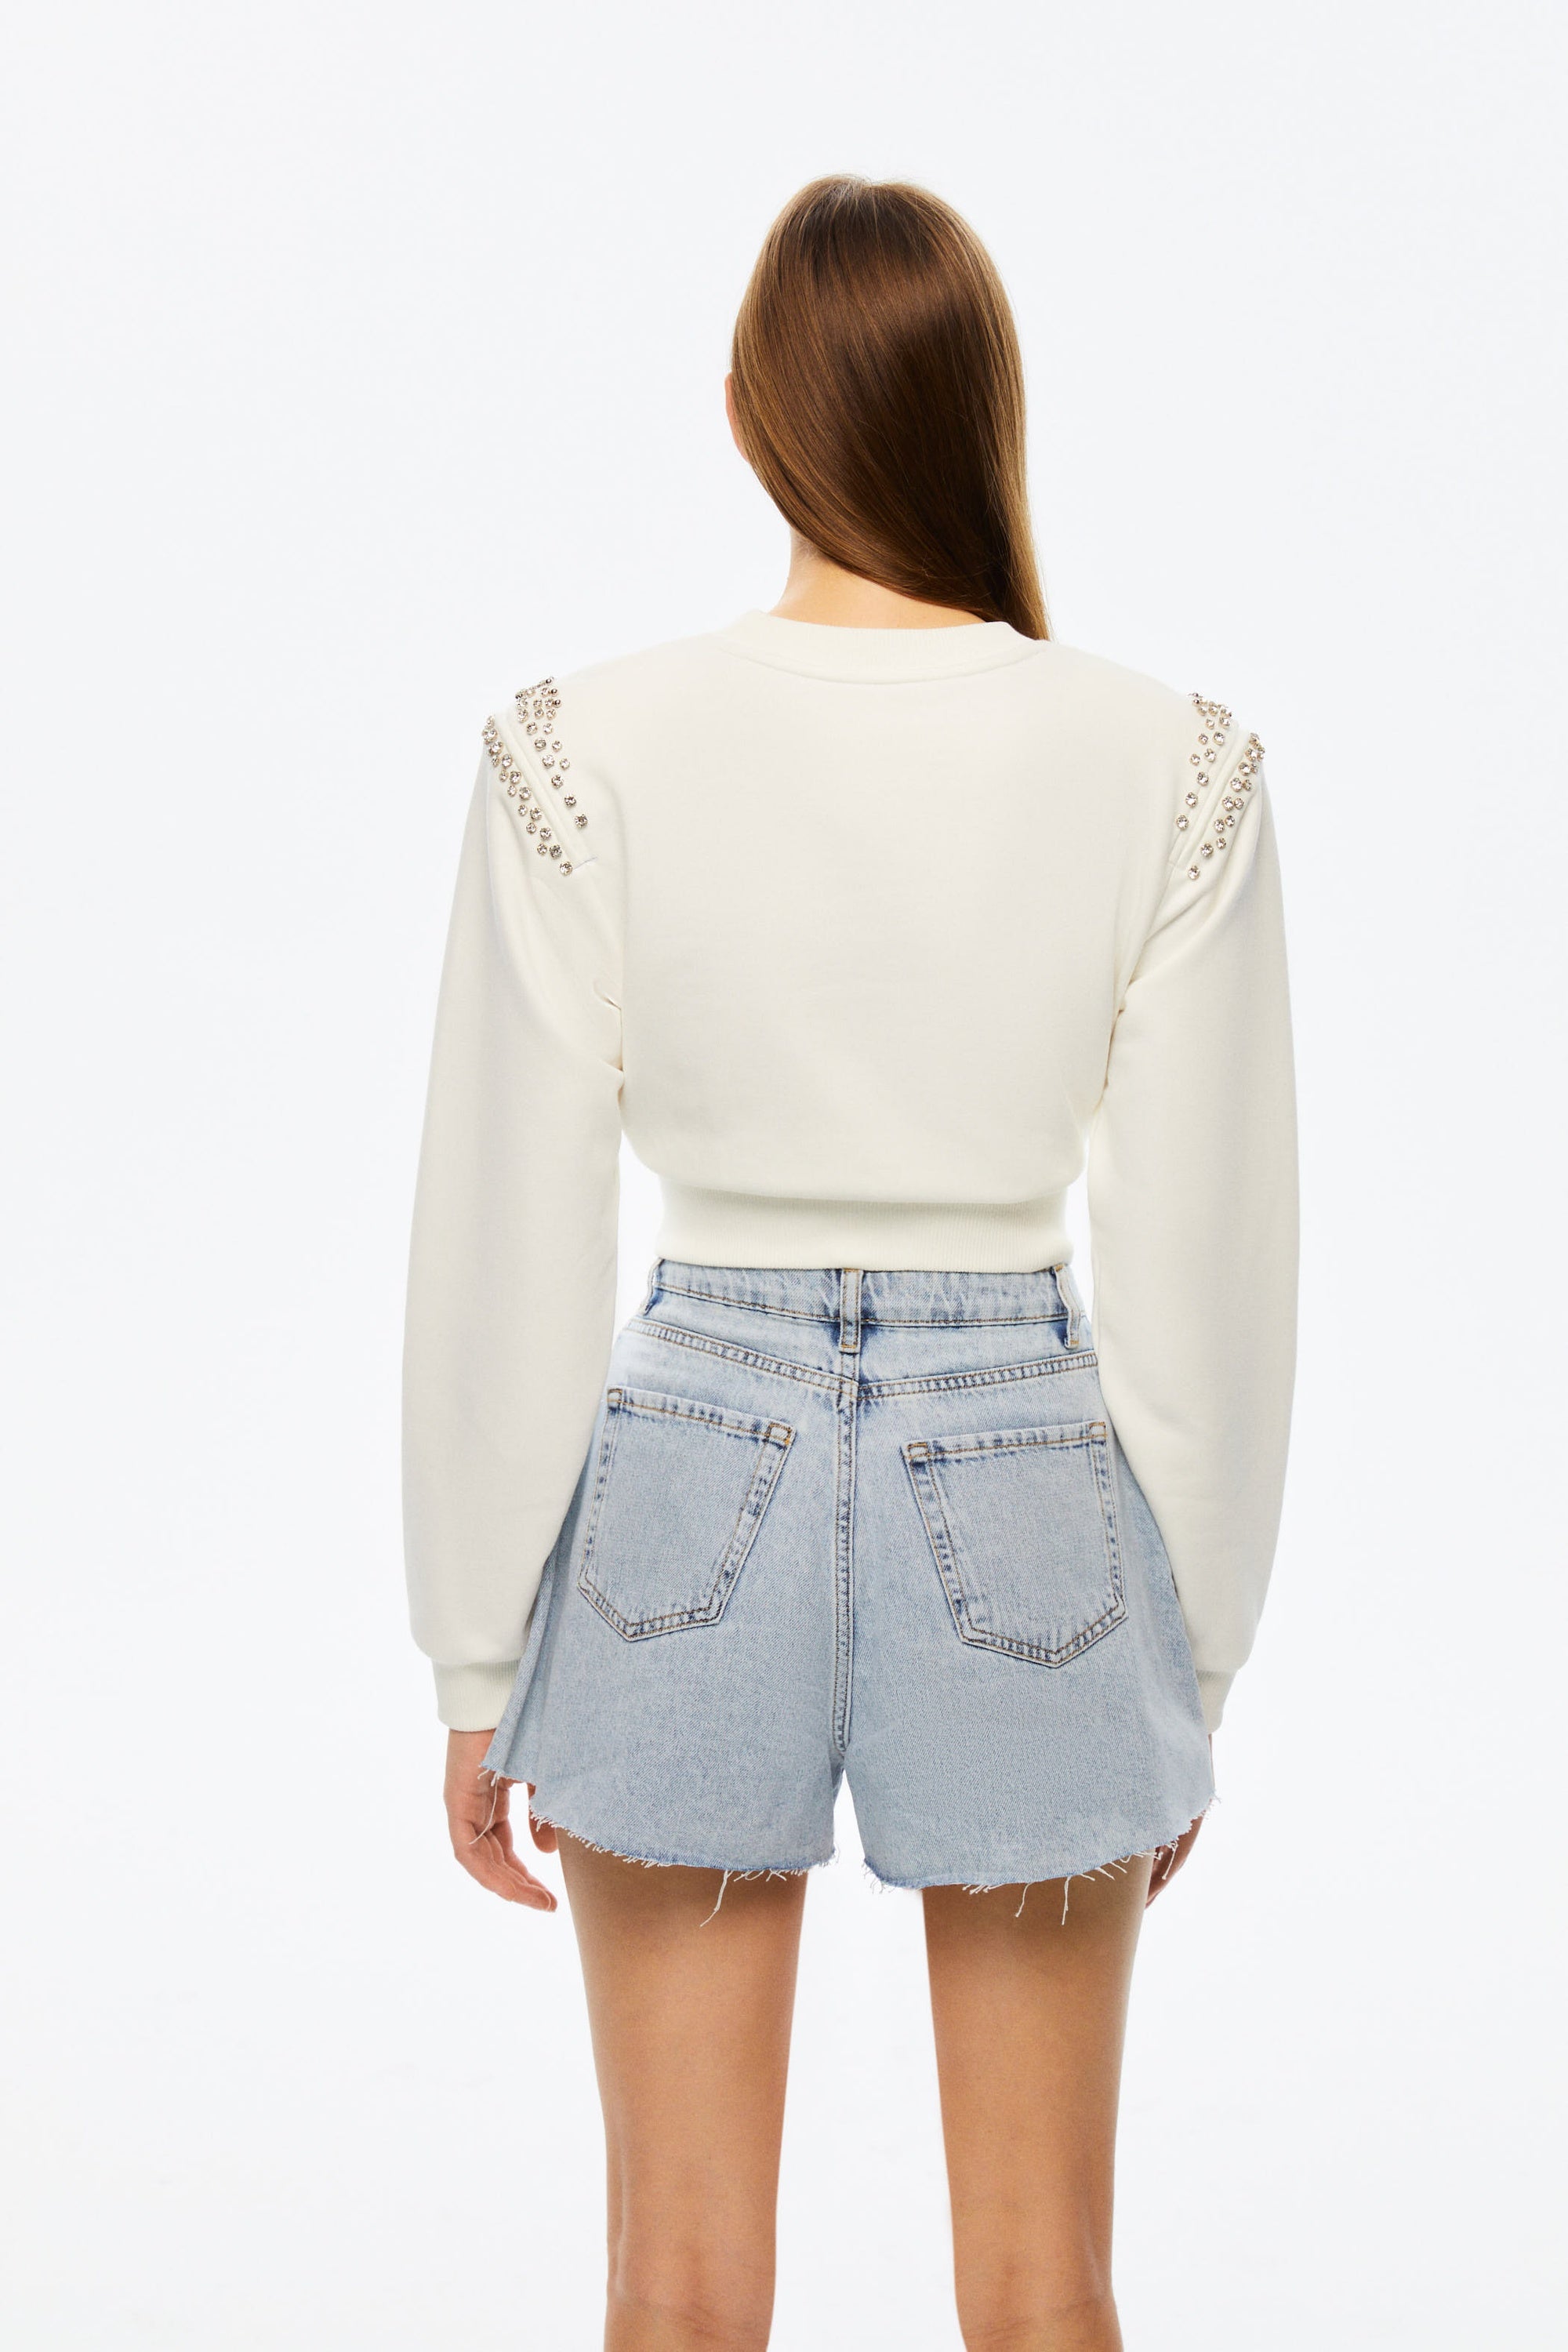 Embellished Jean Shorts